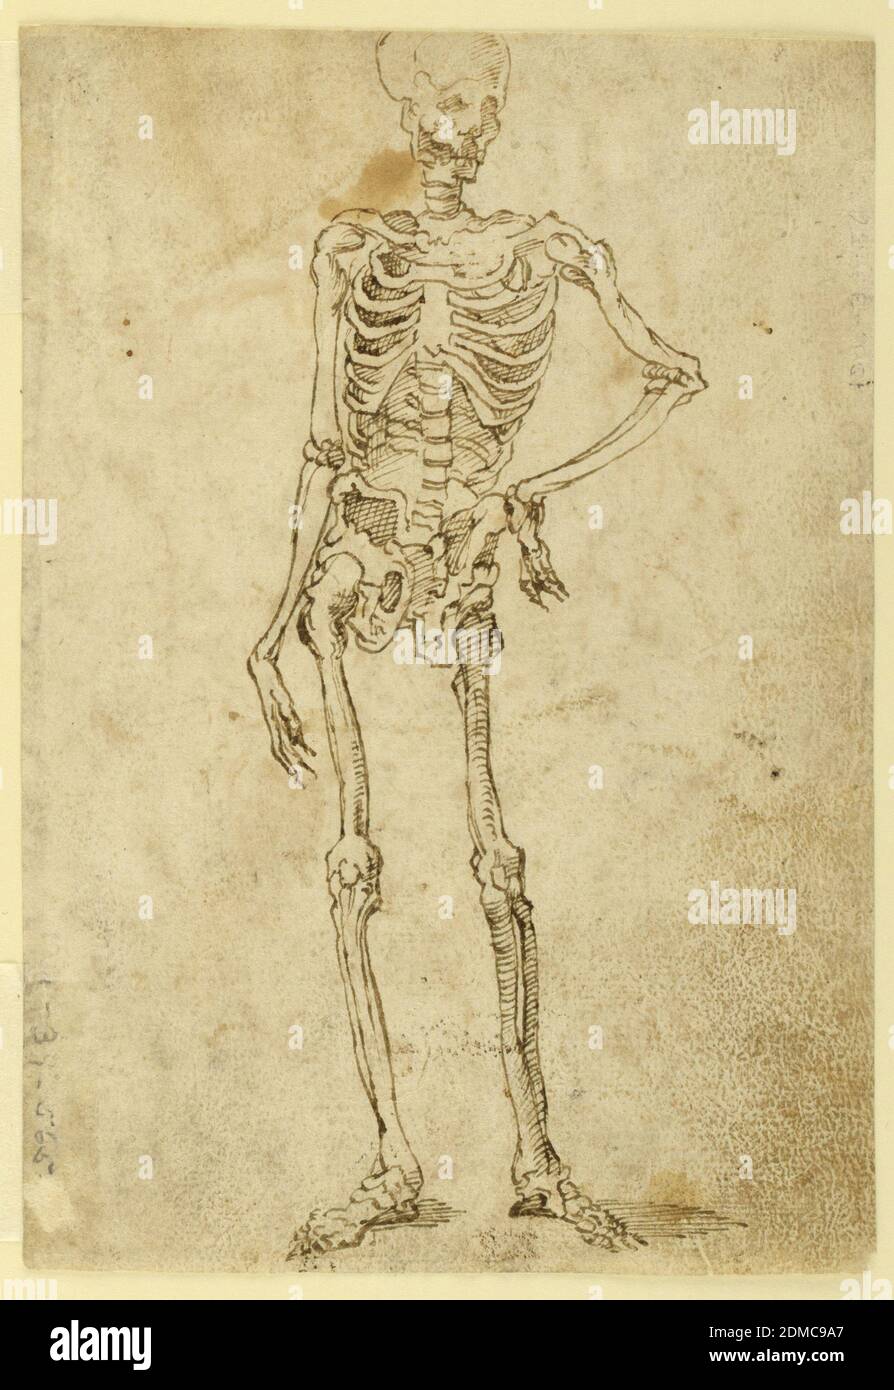 Gráfico de esqueleto humano · Creative Fabrica